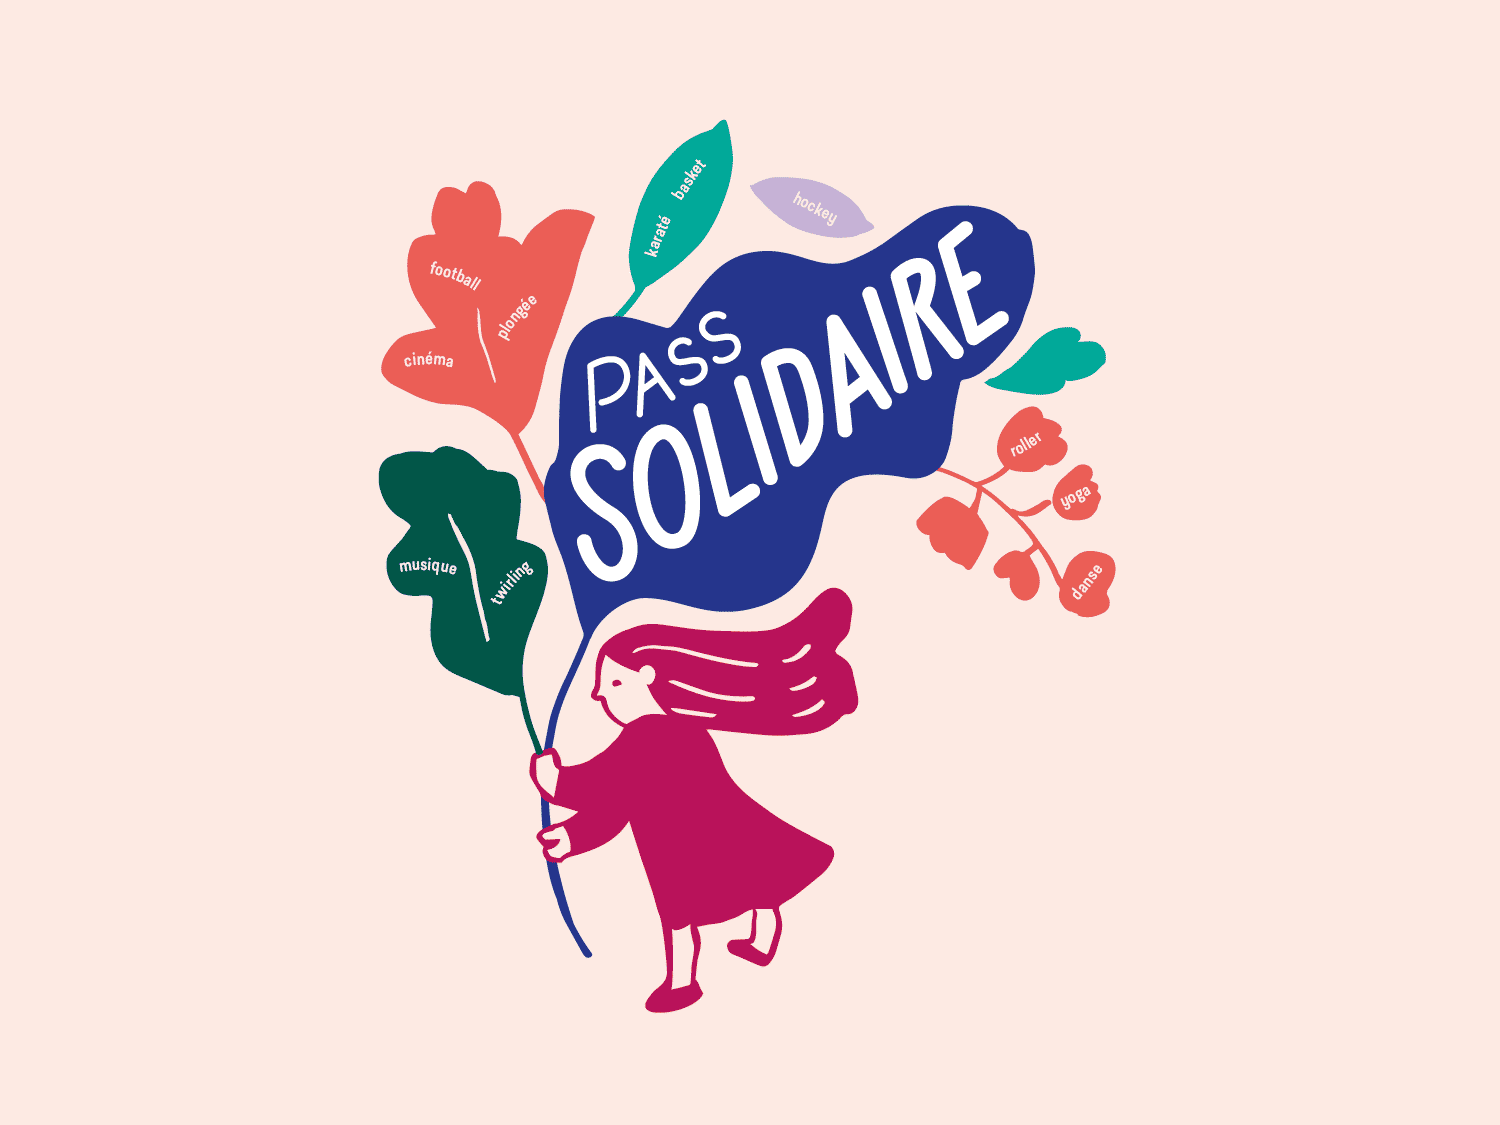 Création graphique de la campagne Pass solidaire 2019